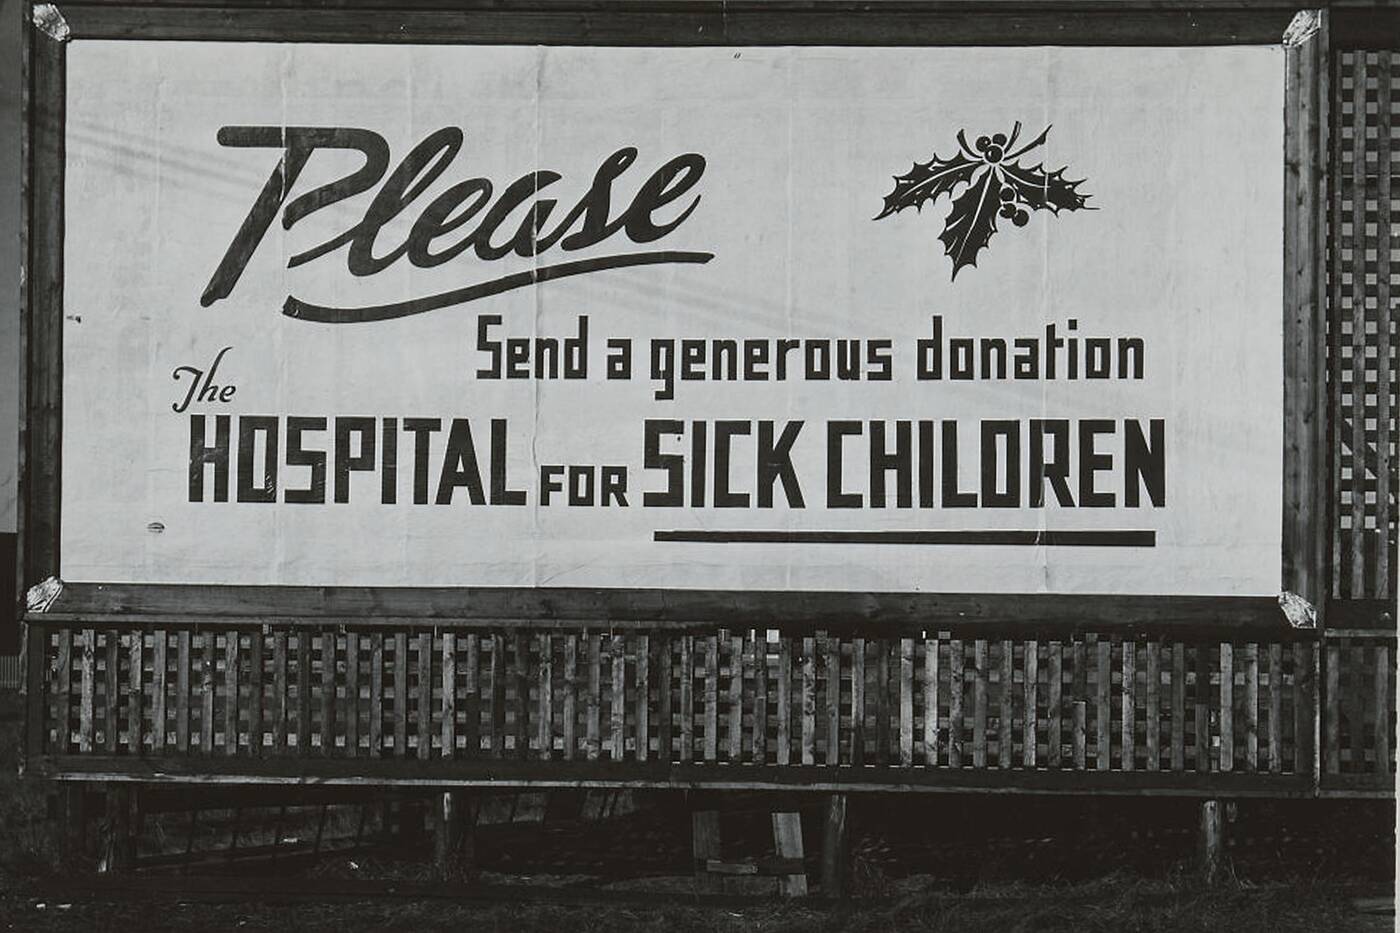 sickkids hospital